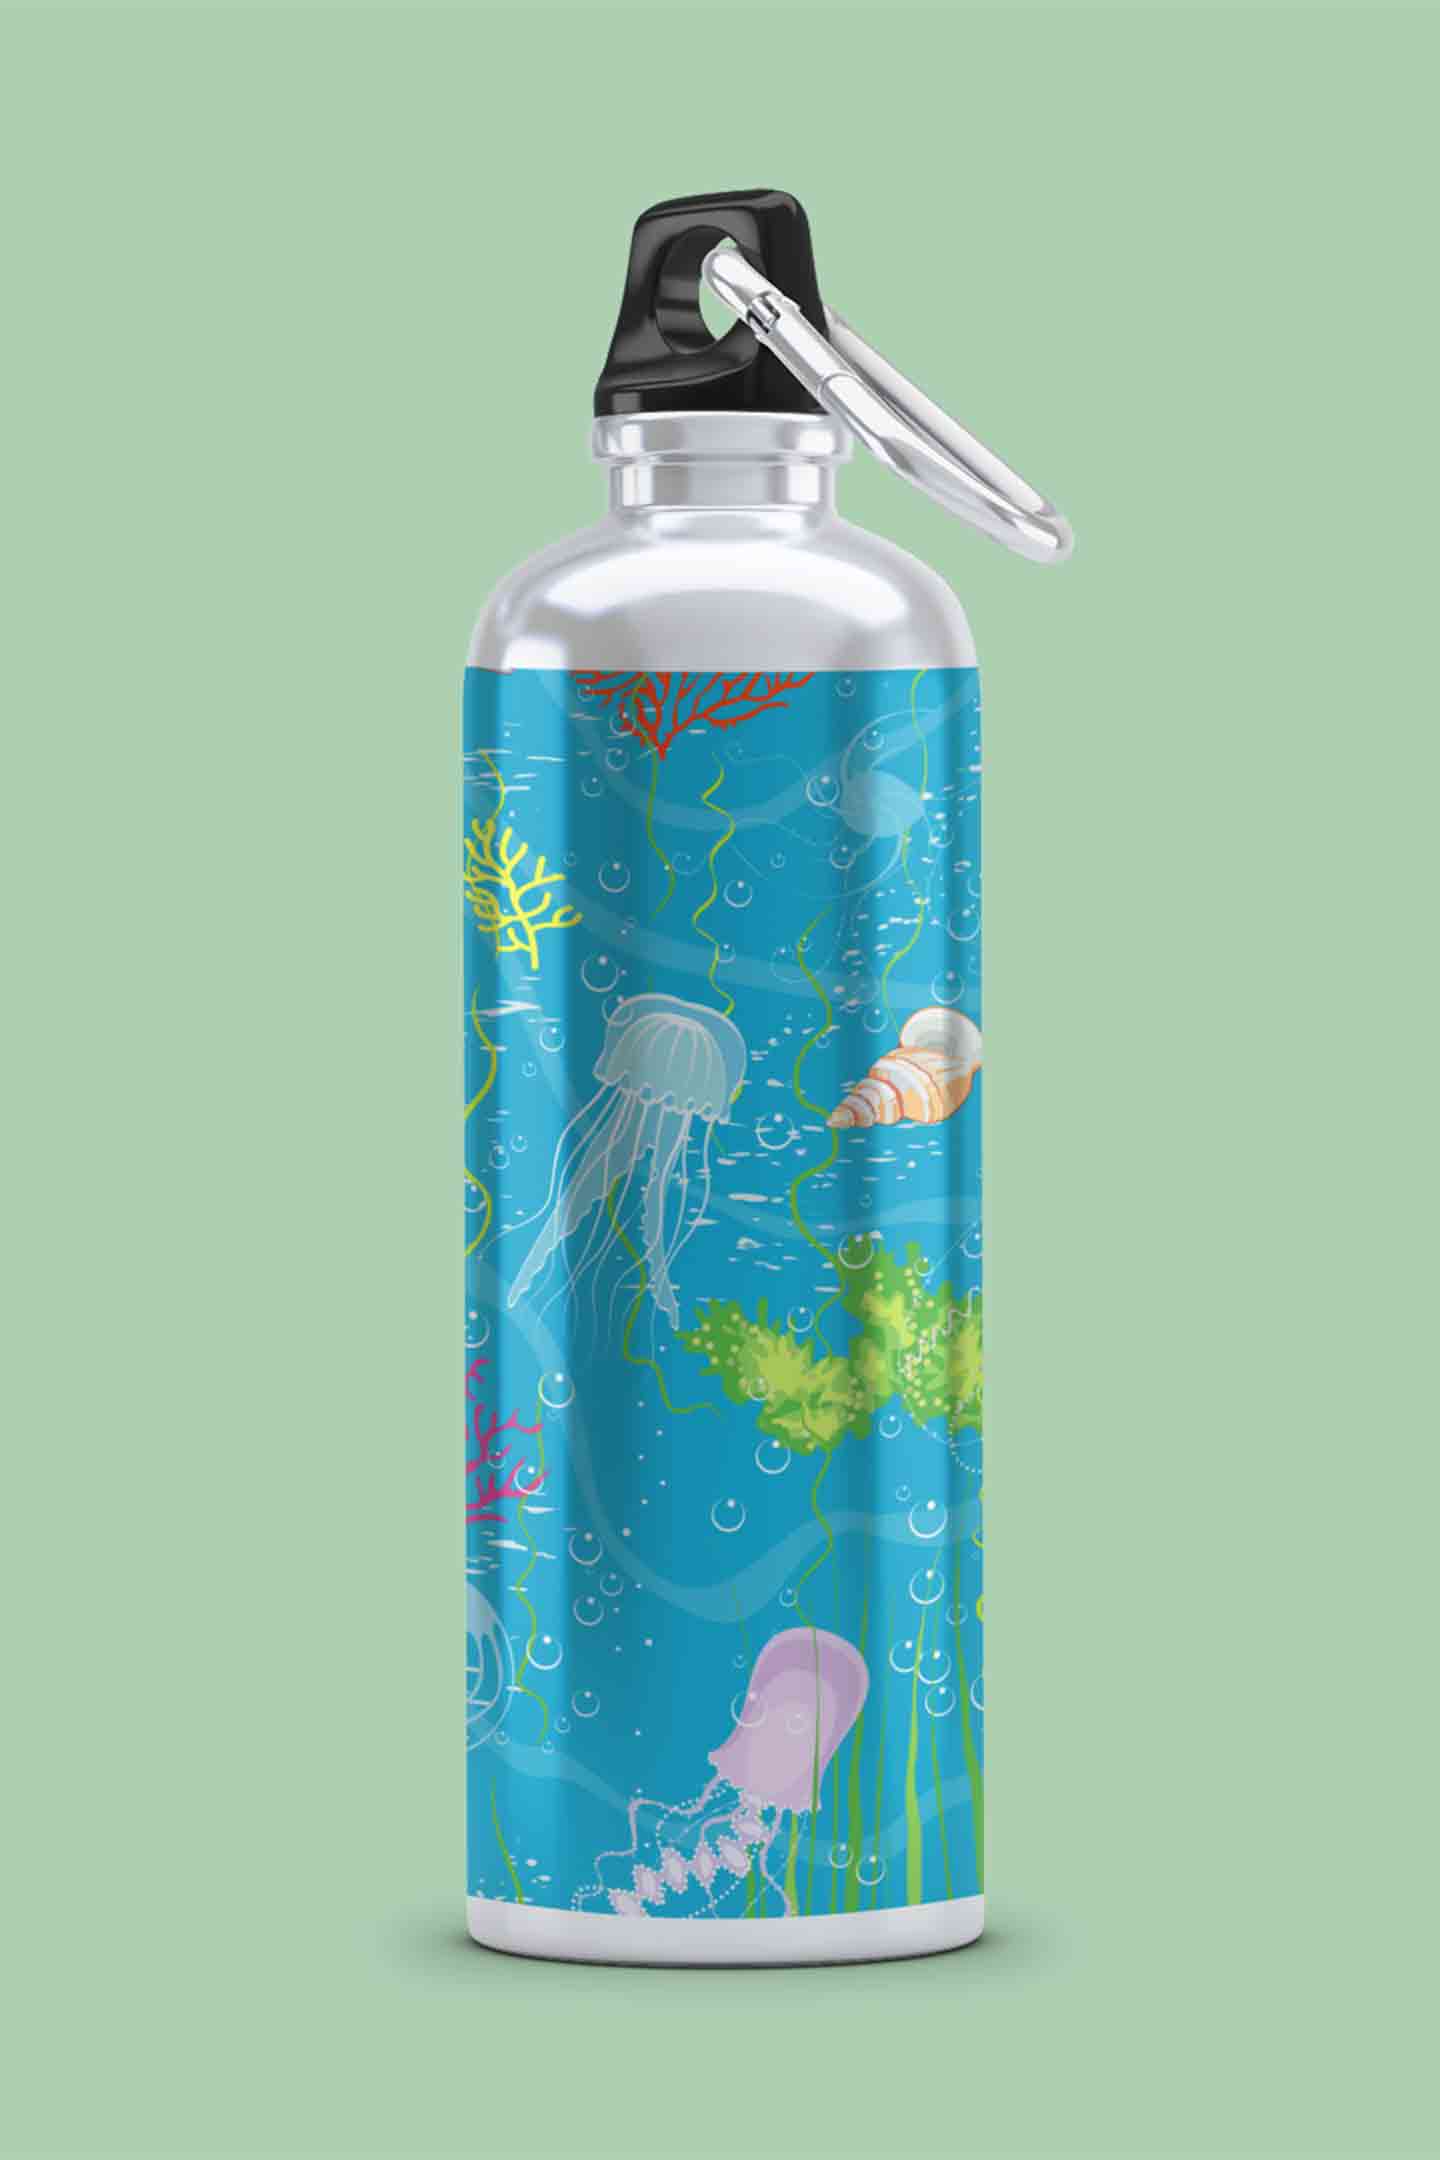 Stepevoli Bottles - Stunning Sealife Bottle